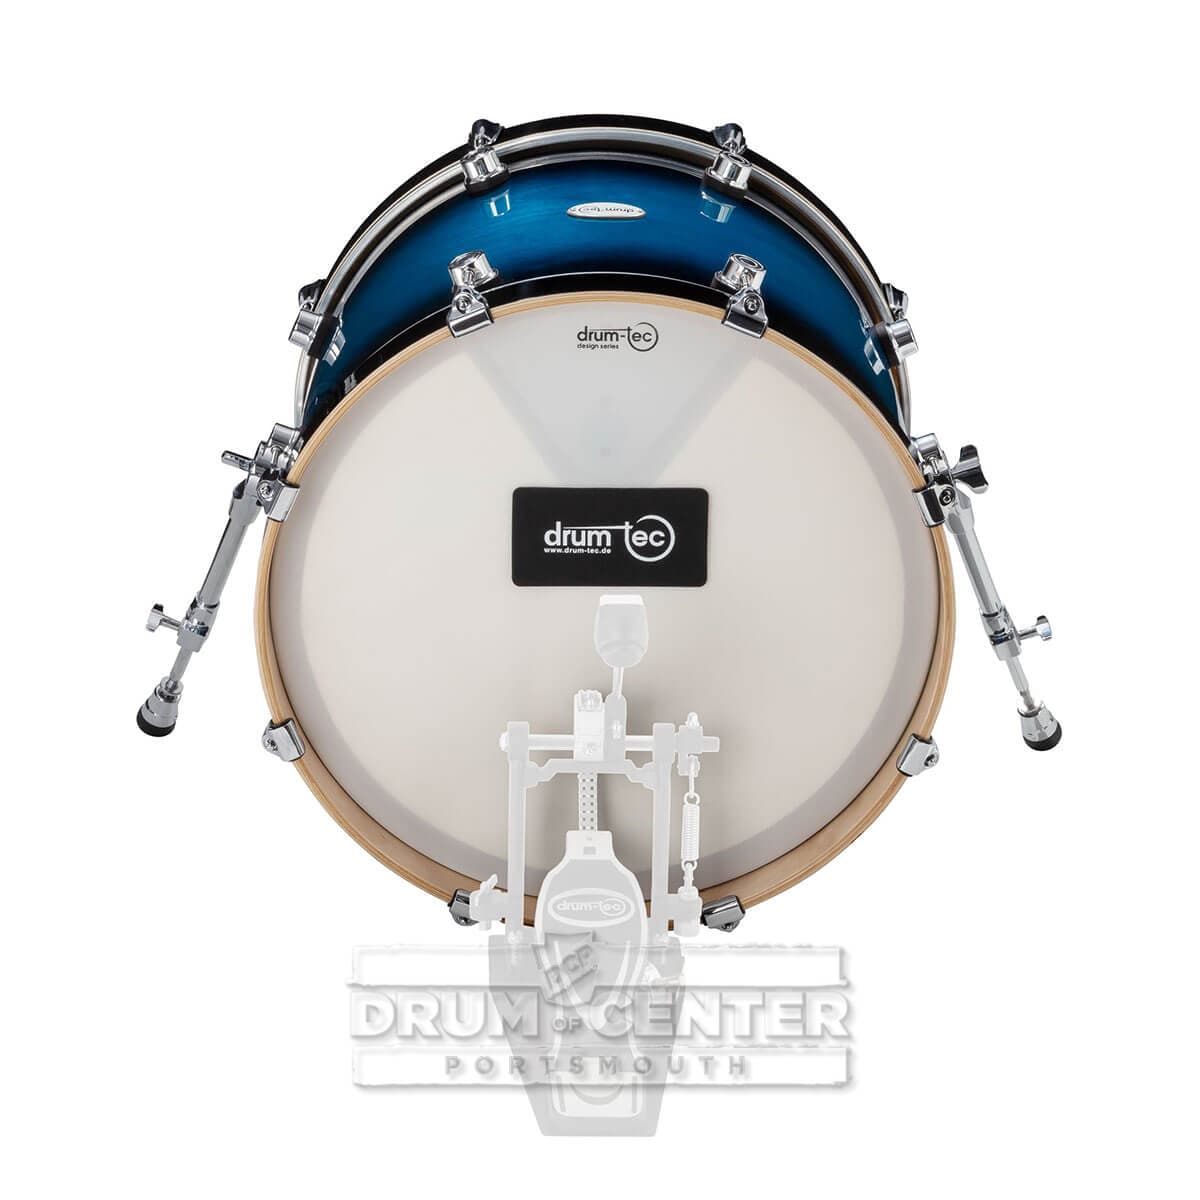 Drum-Tec Pro 3 Series E-Bass Drum 20x16 Blue Burst